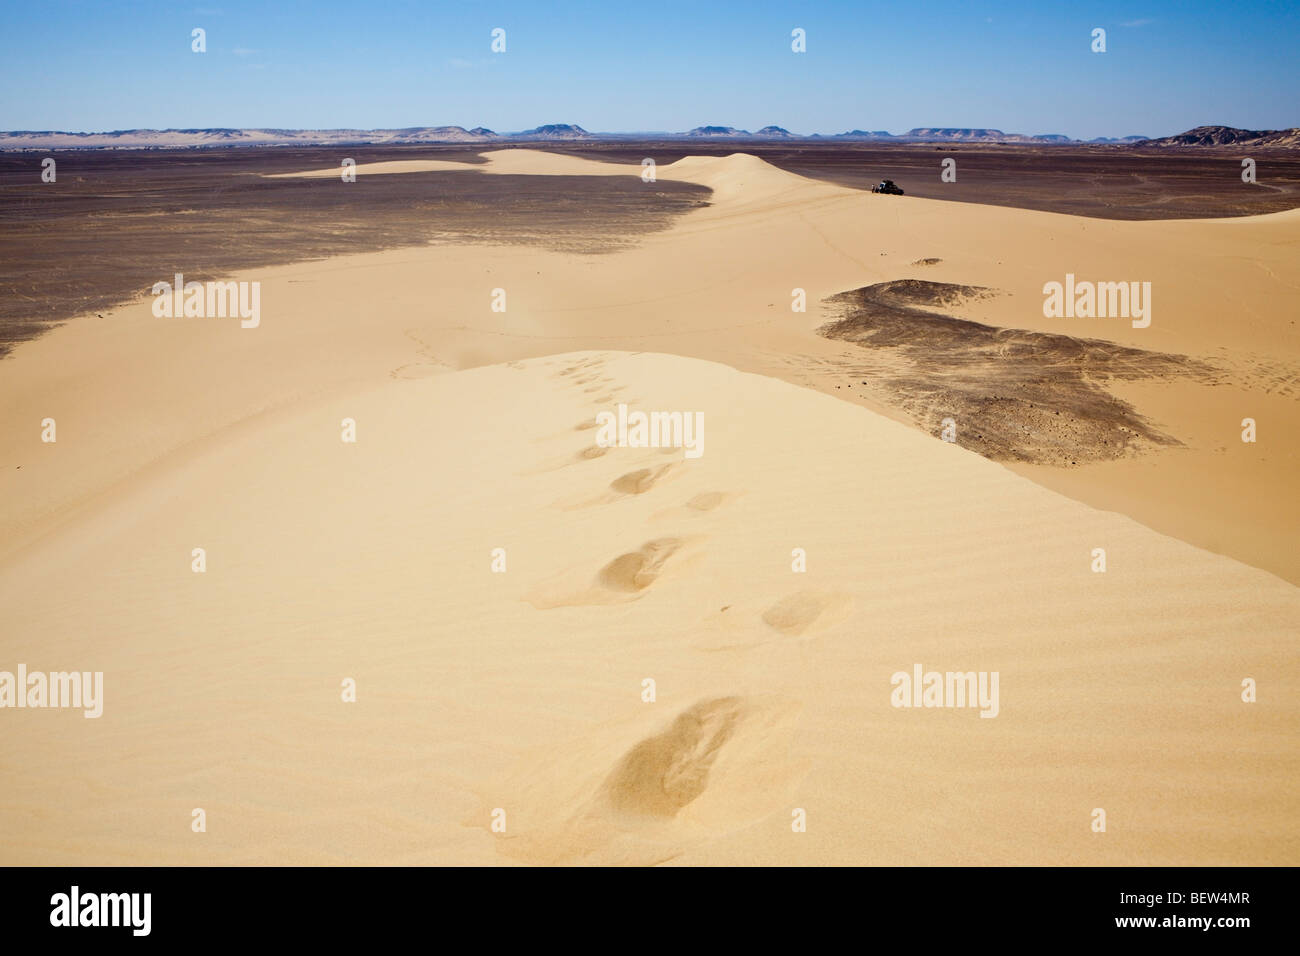 Nel deserto libico immagini e fotografie stock ad alta risoluzione - Alamy